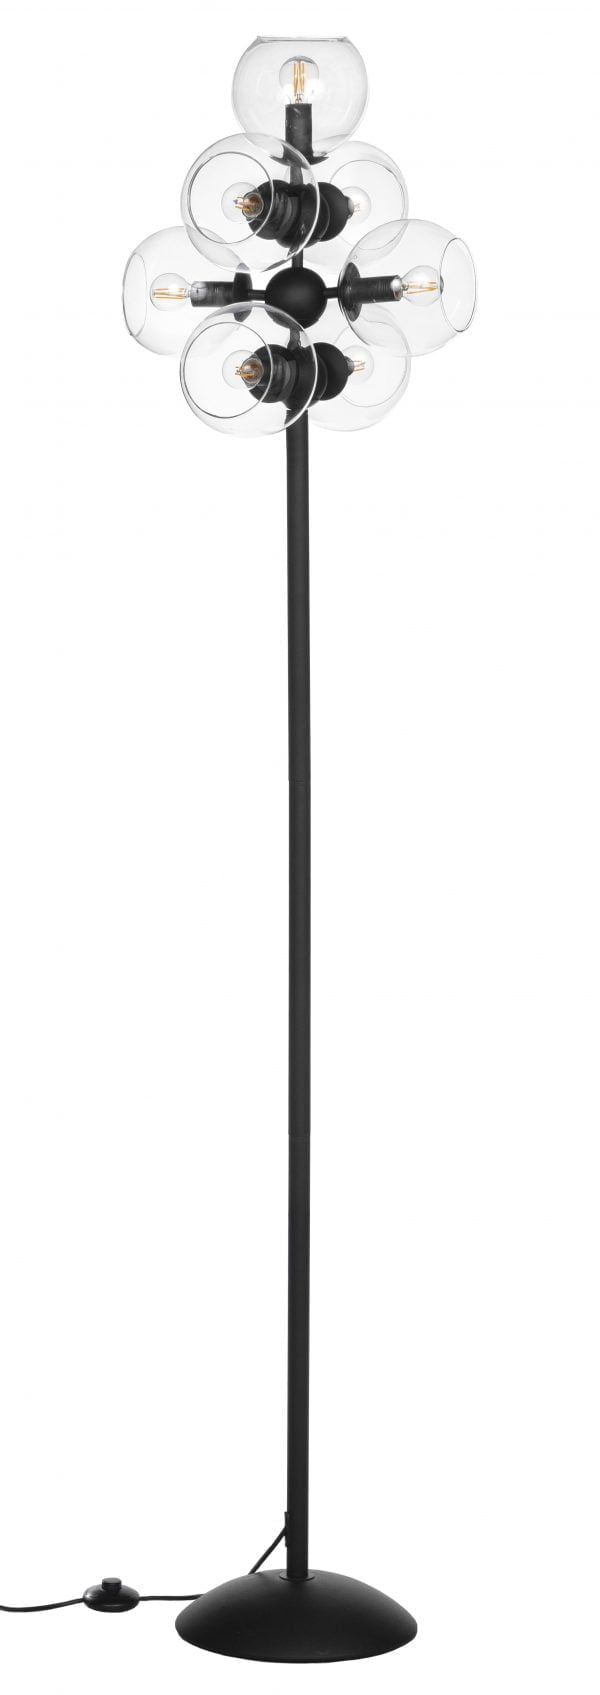 Jimena-L7 on metallinen, musta lattiavalaisin. Jalkalamppu on väriltään musta ja siinä on seitsemän valopistettä joiden ympärillä on kirkas lasikupu.